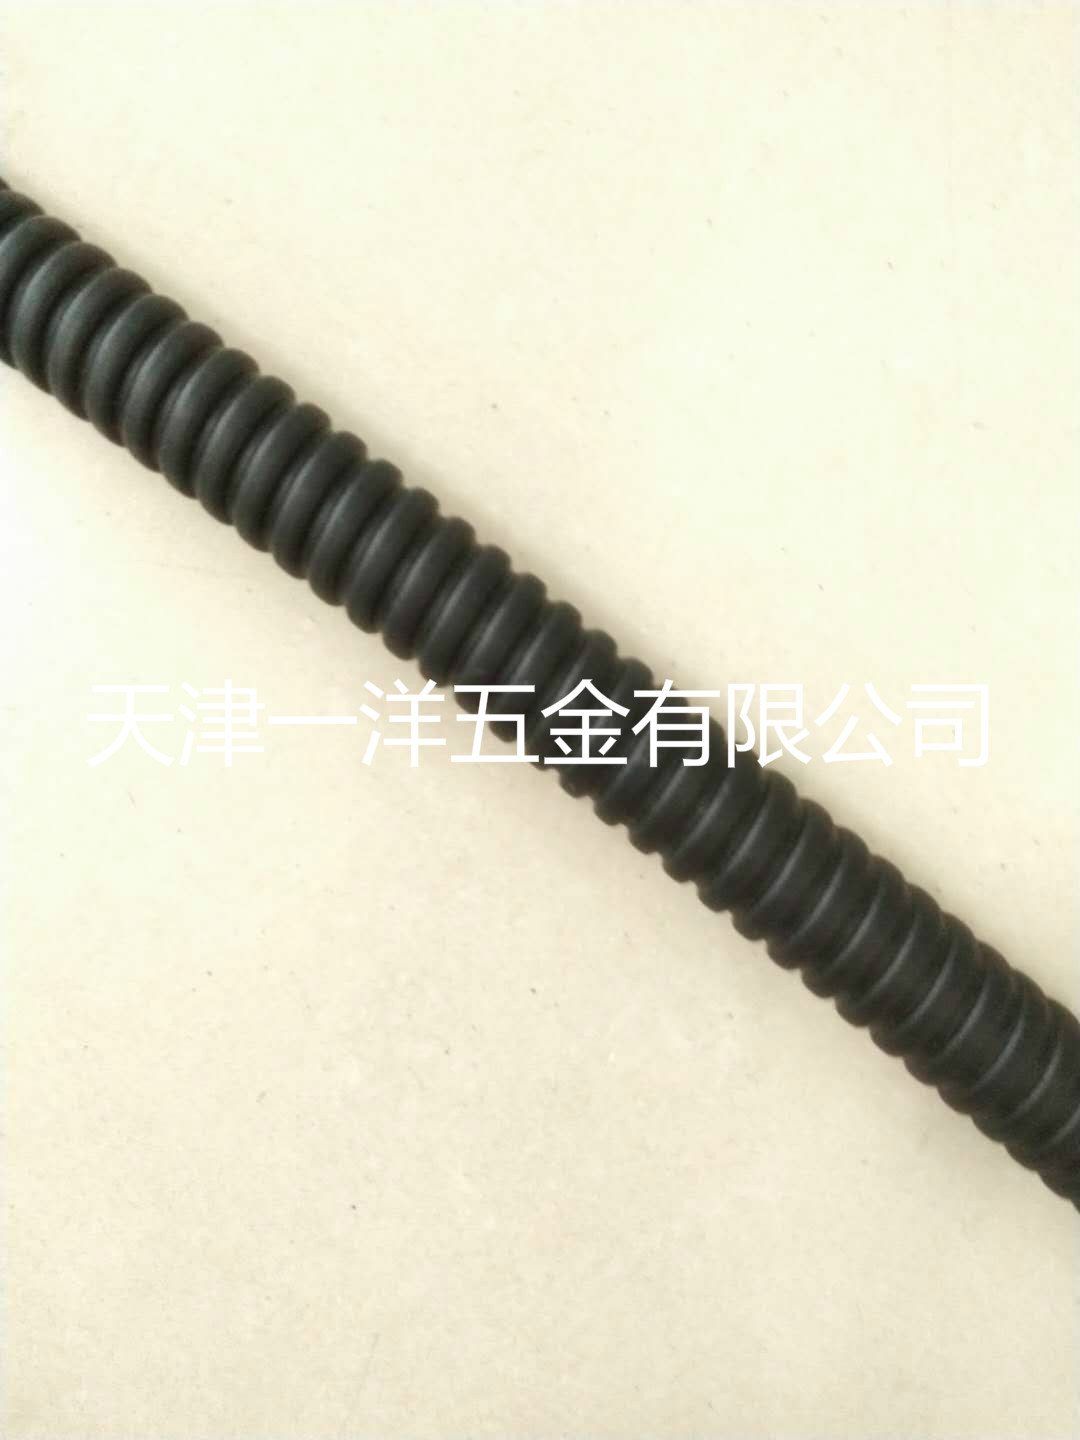 天津有45度不锈钢弯头 2寸包塑金属软管接头的厂家吗